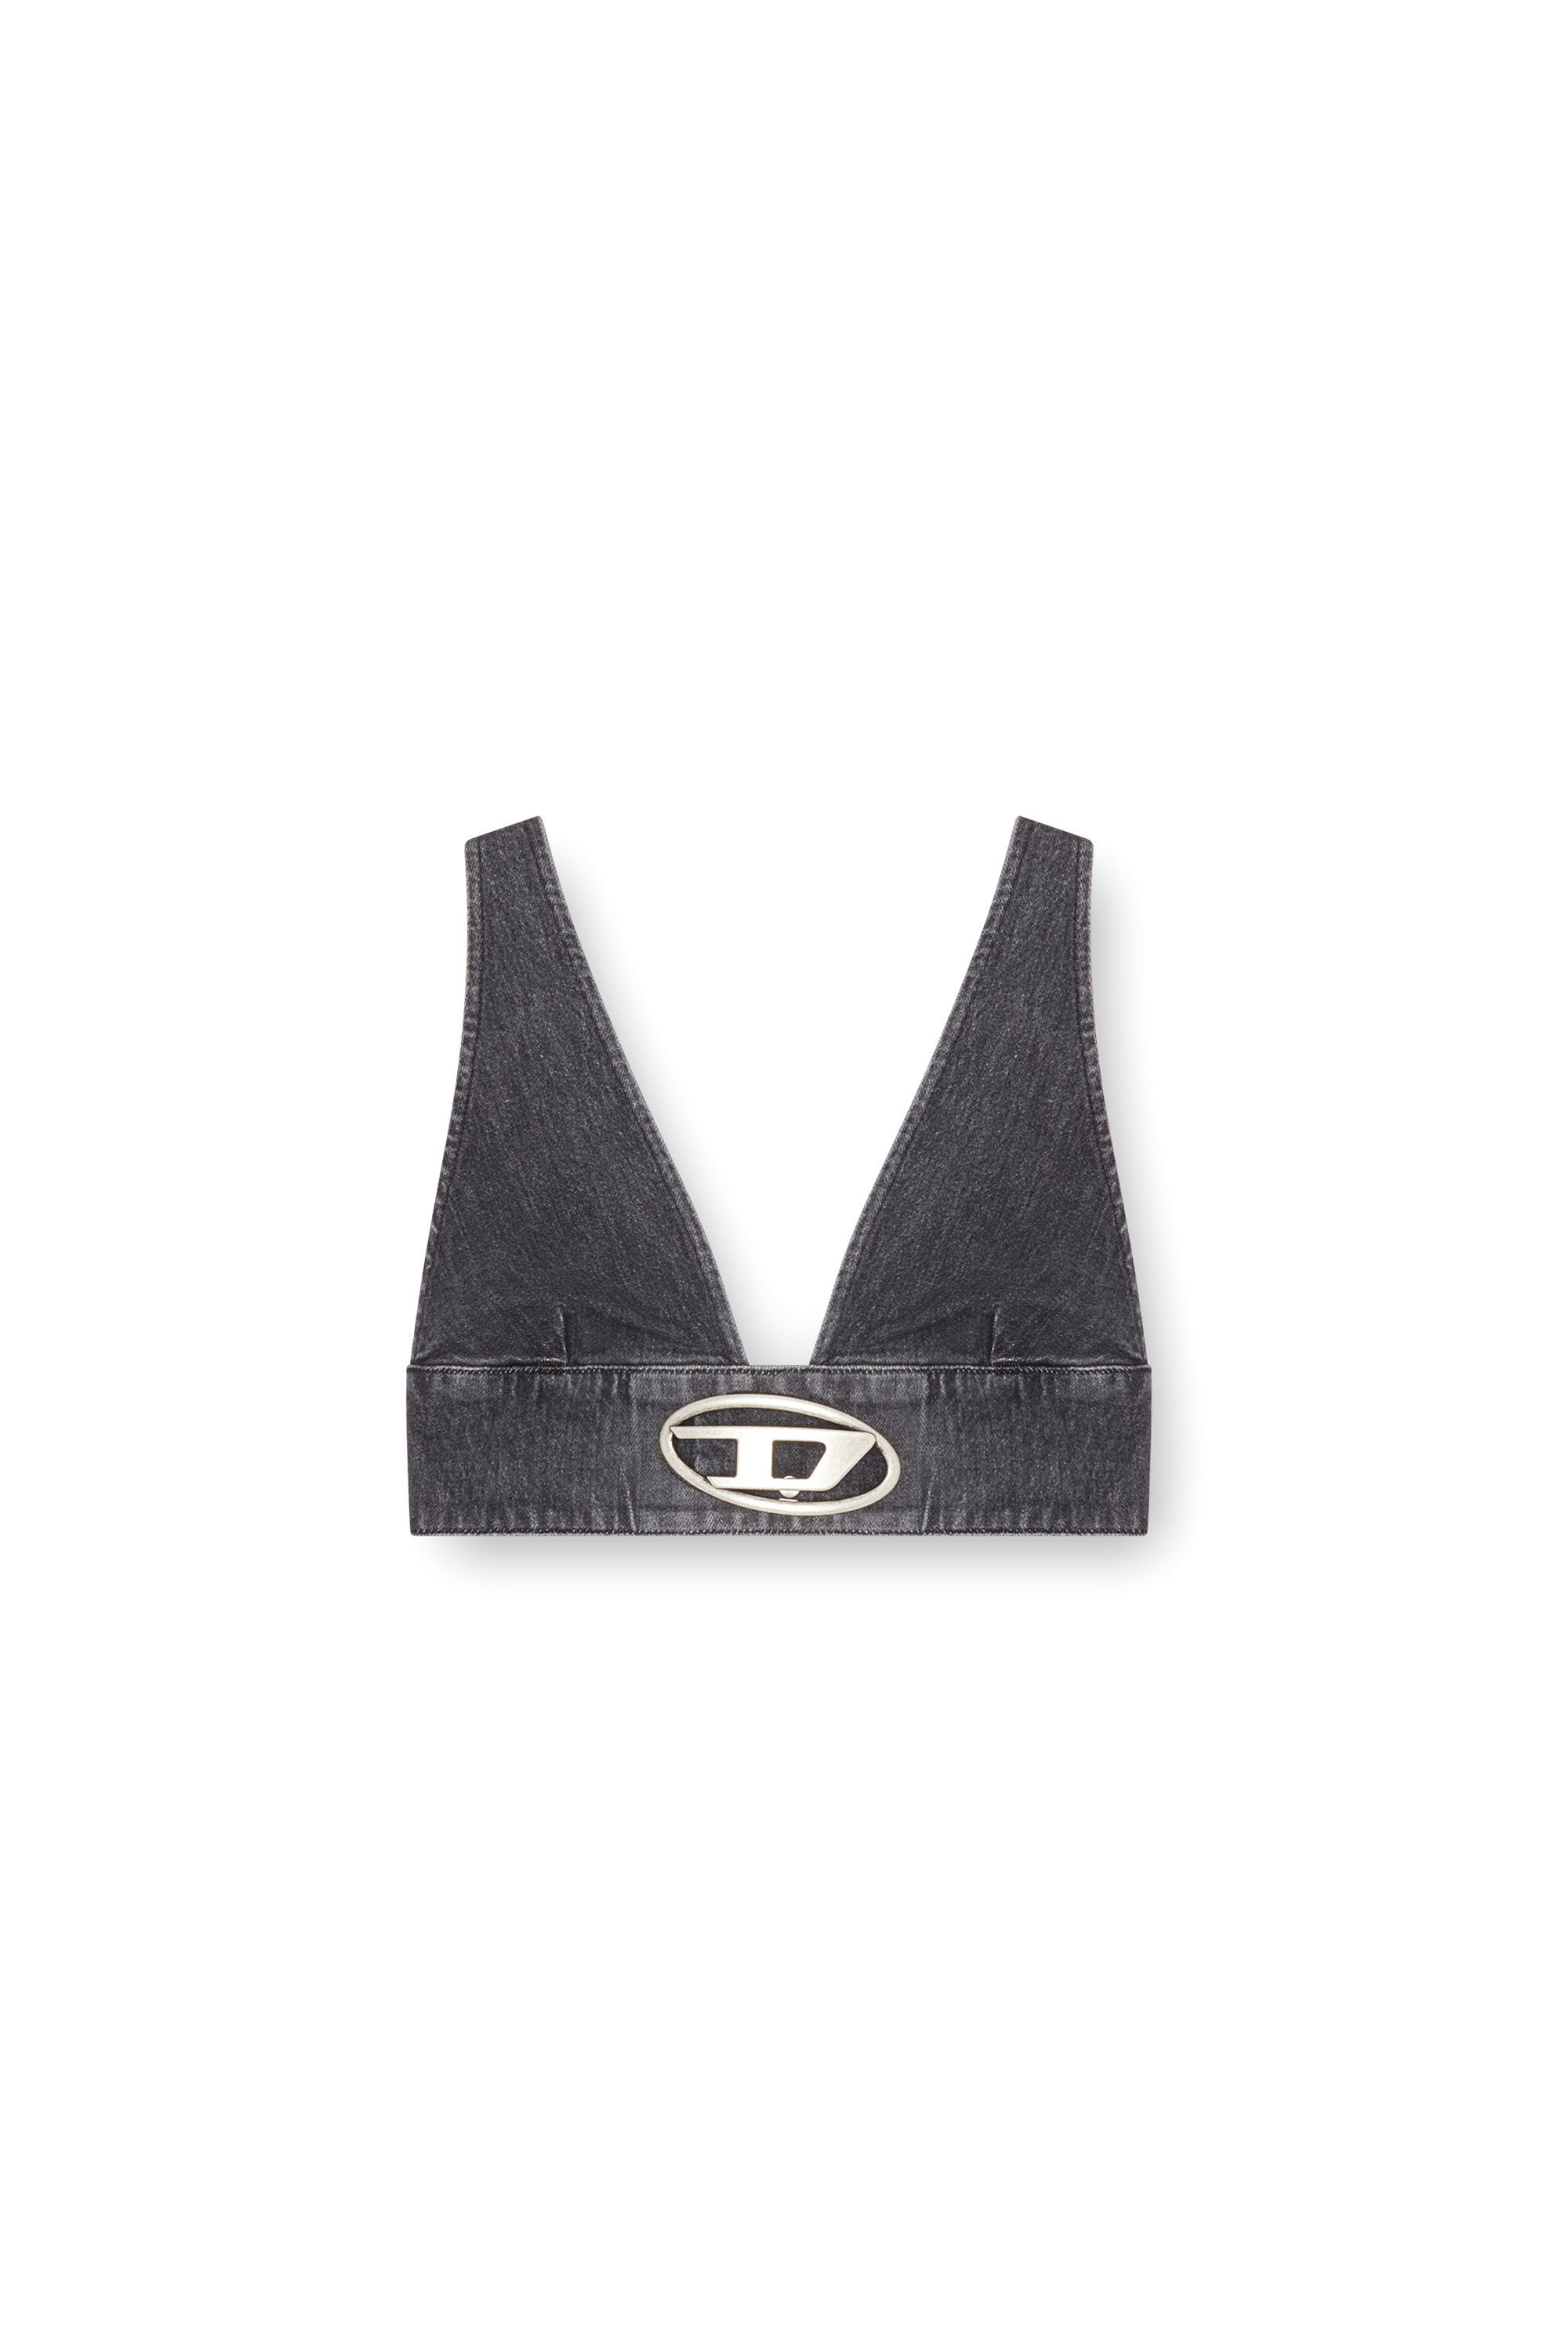 Diesel - DE-ELLY-S, Mujer Sujetador top en denim con placa Oval D in Negro - Image 2